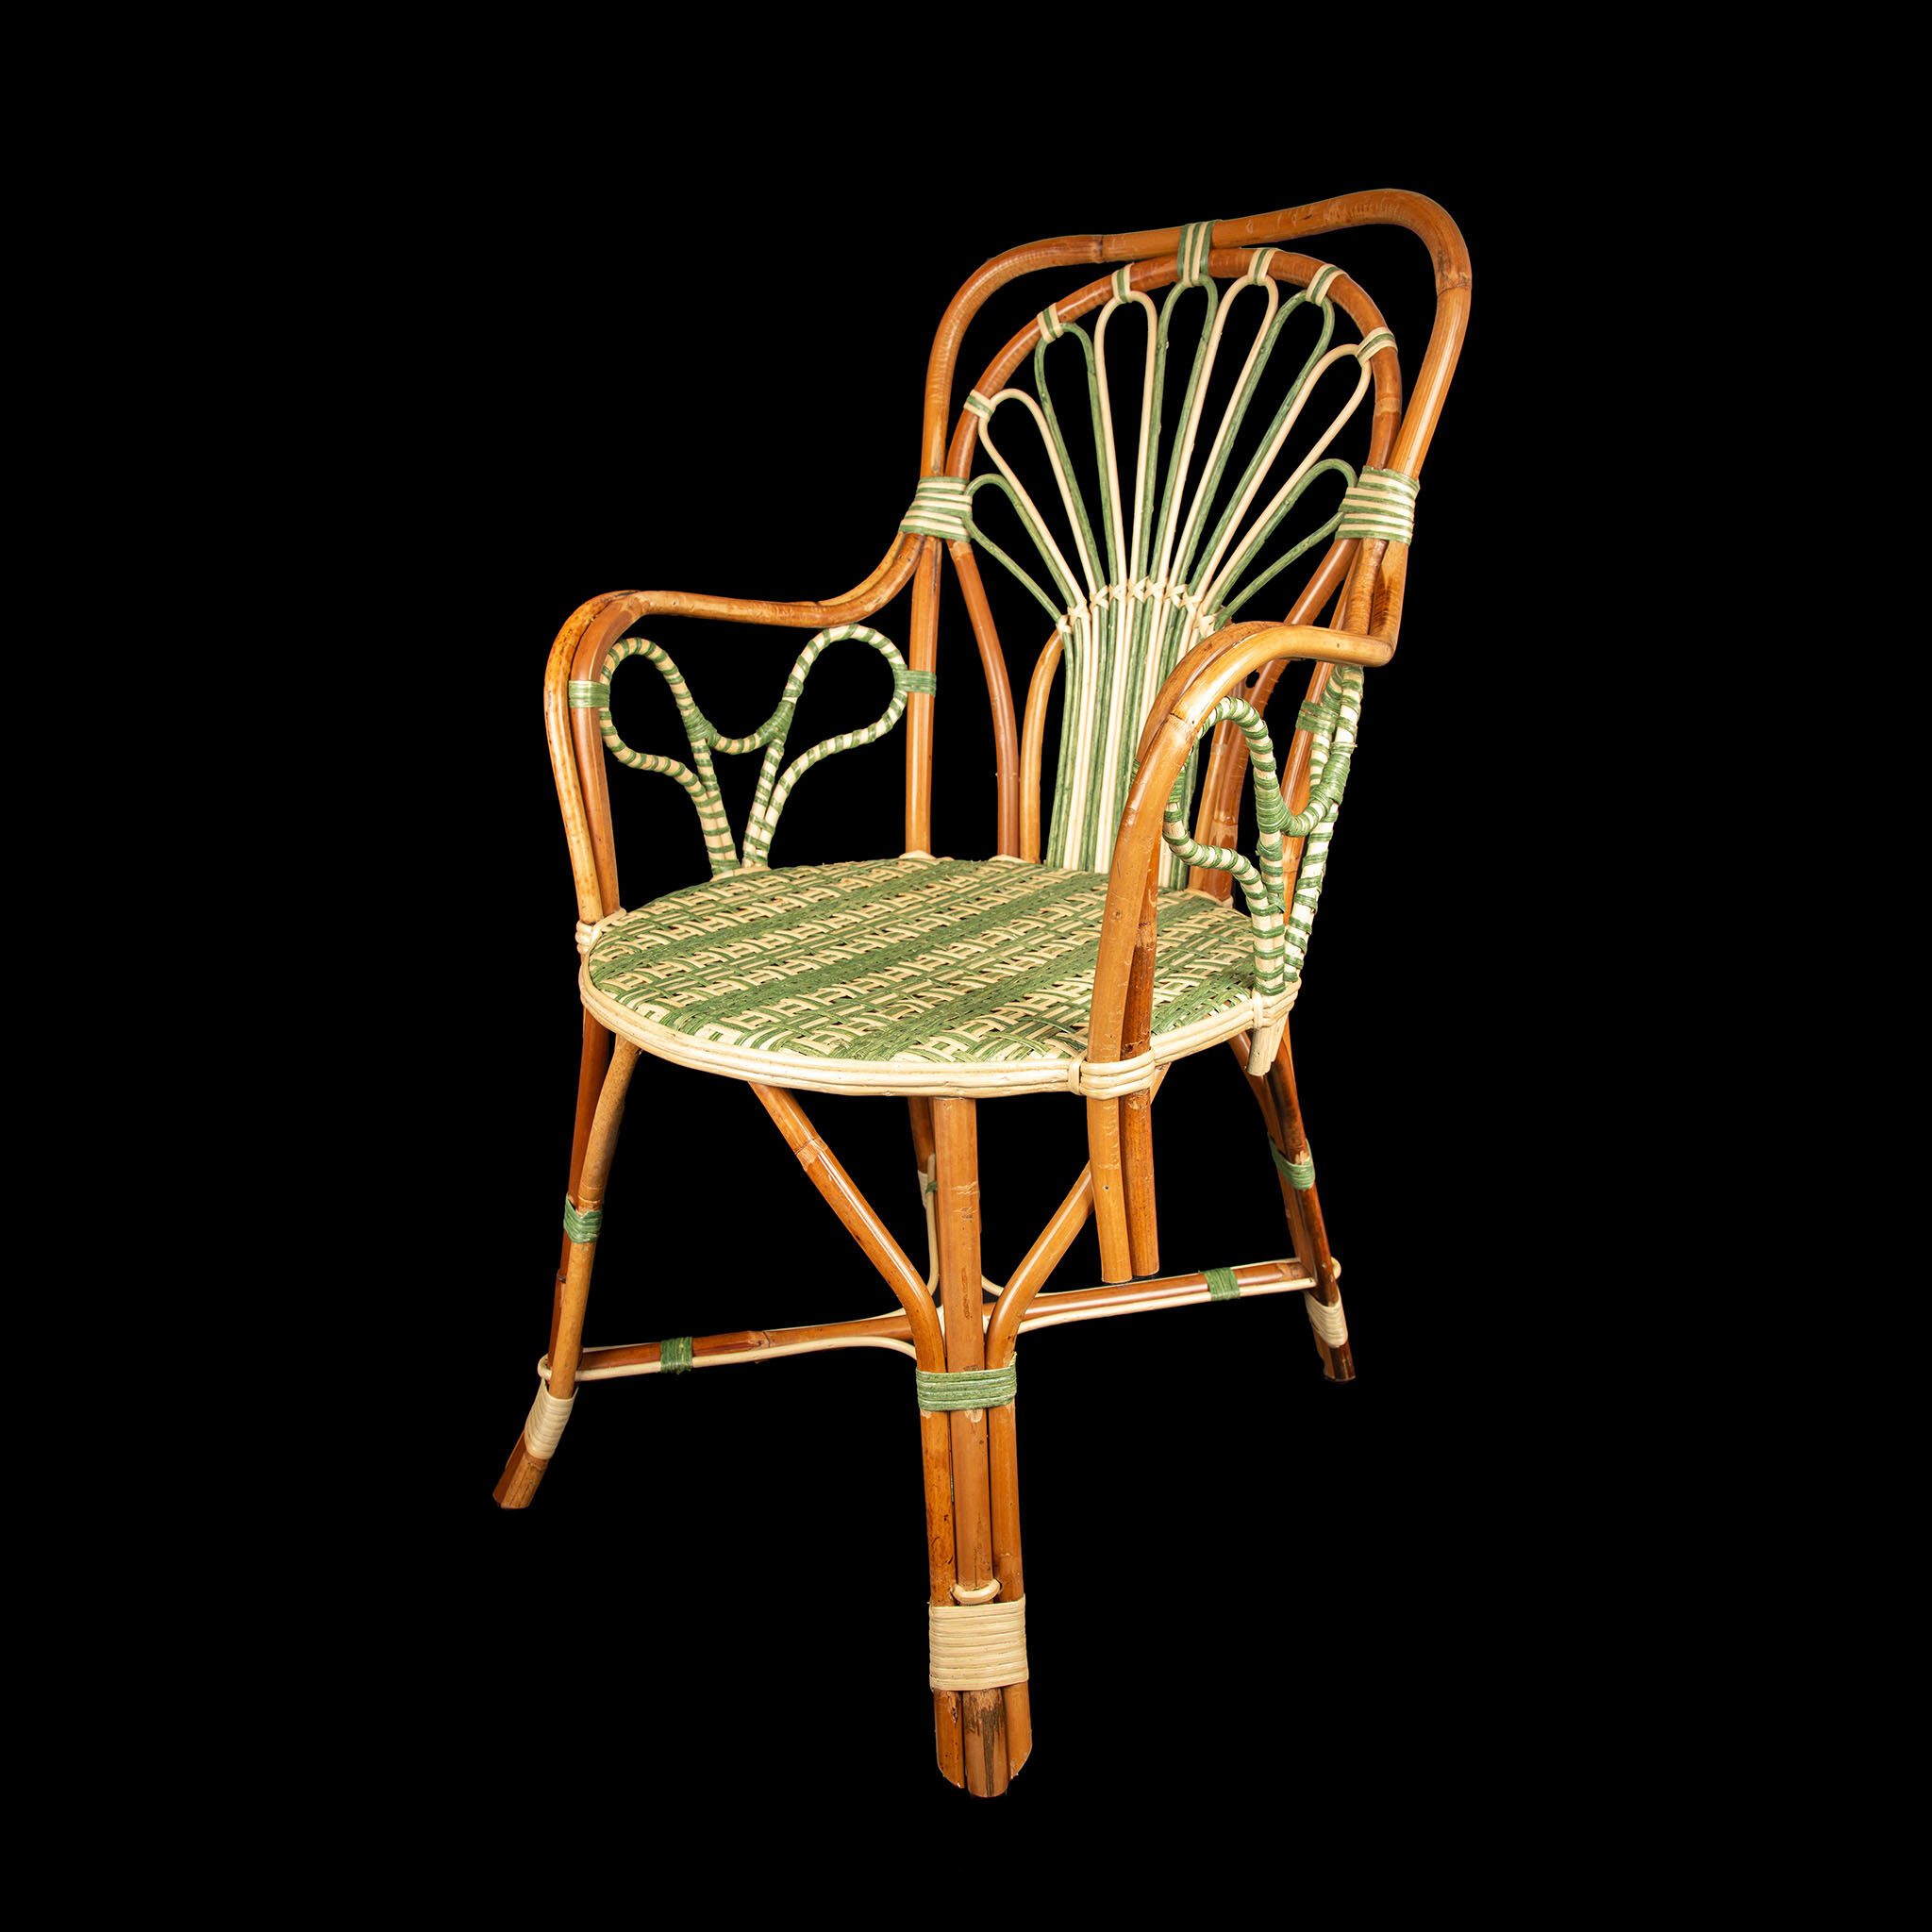 Peacock Rattan Arm Chair